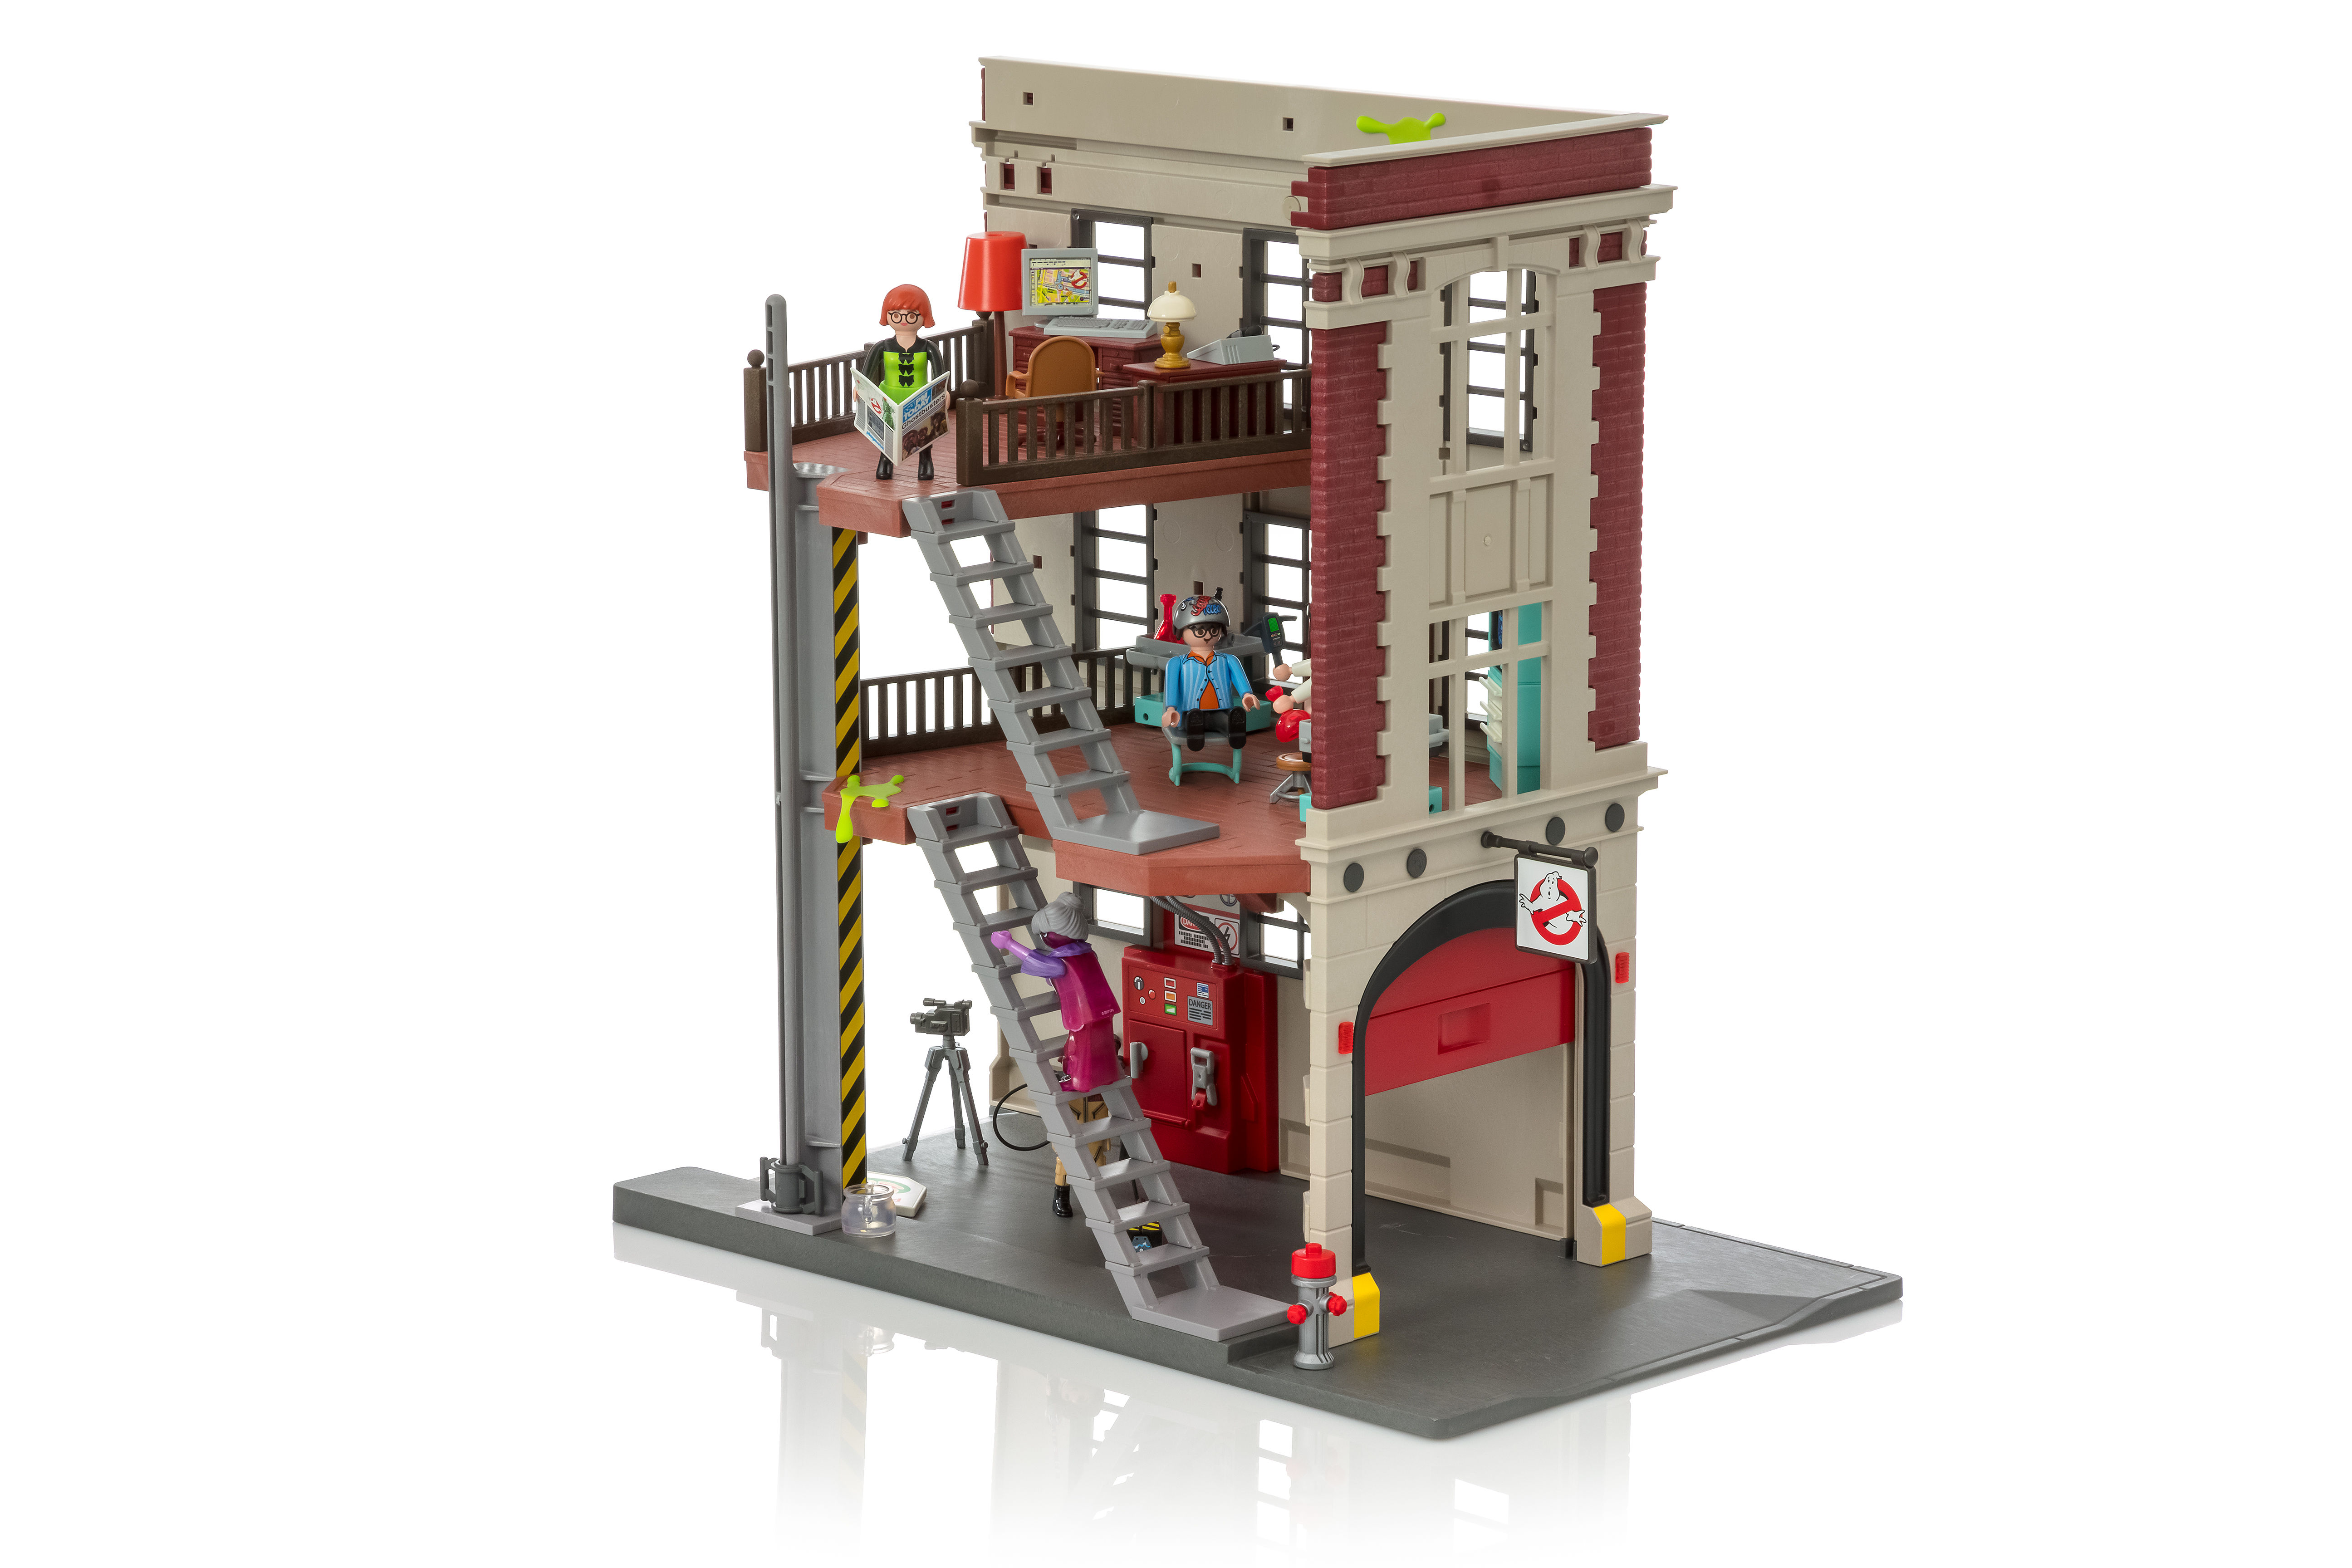 GHOSTBUSTERS - Quartier Général Ghostbusters 'PLAYMOBIL' Version 9219 :  : Playmobil Playmobil Ghostbusters